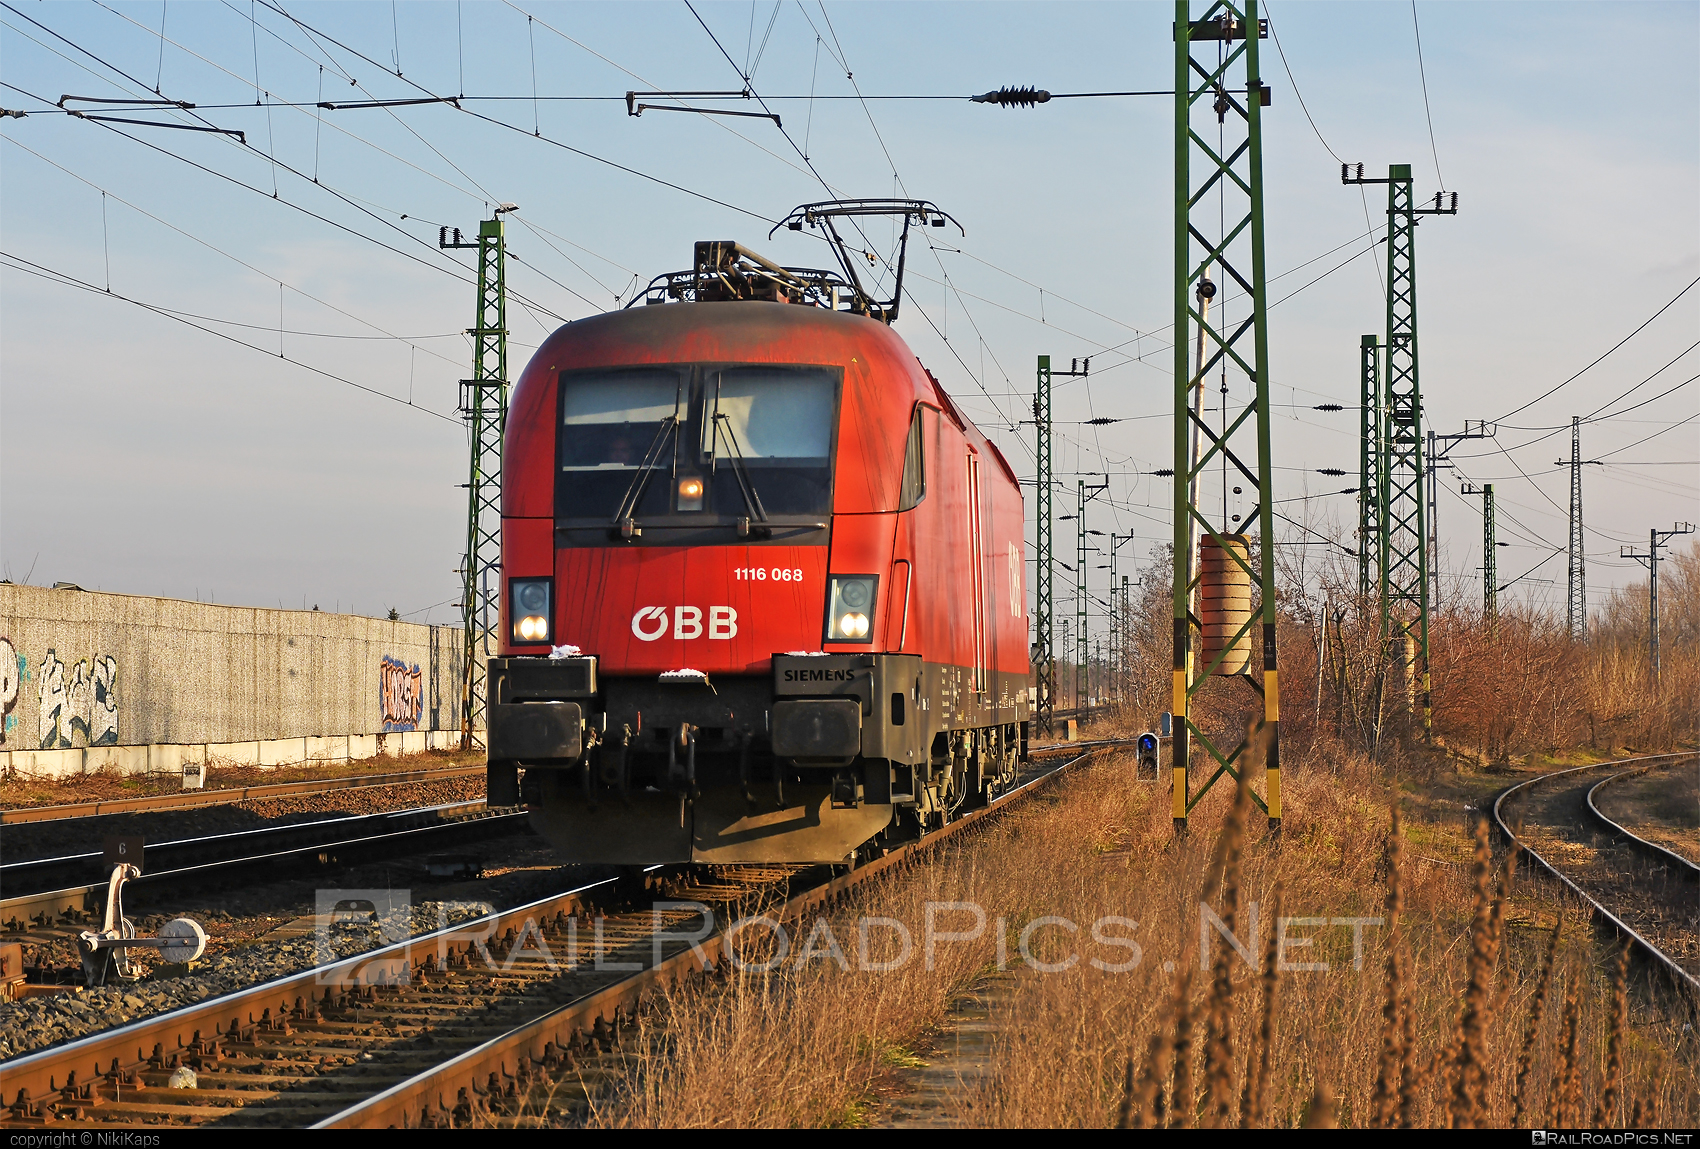 Siemens ES 64 U2 - 1116 068 operated by Rail Cargo Austria AG #es64 #es64u2 #eurosprinter #obb #osterreichischebundesbahnen #rcw #siemens #siemensEs64 #siemensEs64u2 #siemenstaurus #taurus #tauruslocomotive